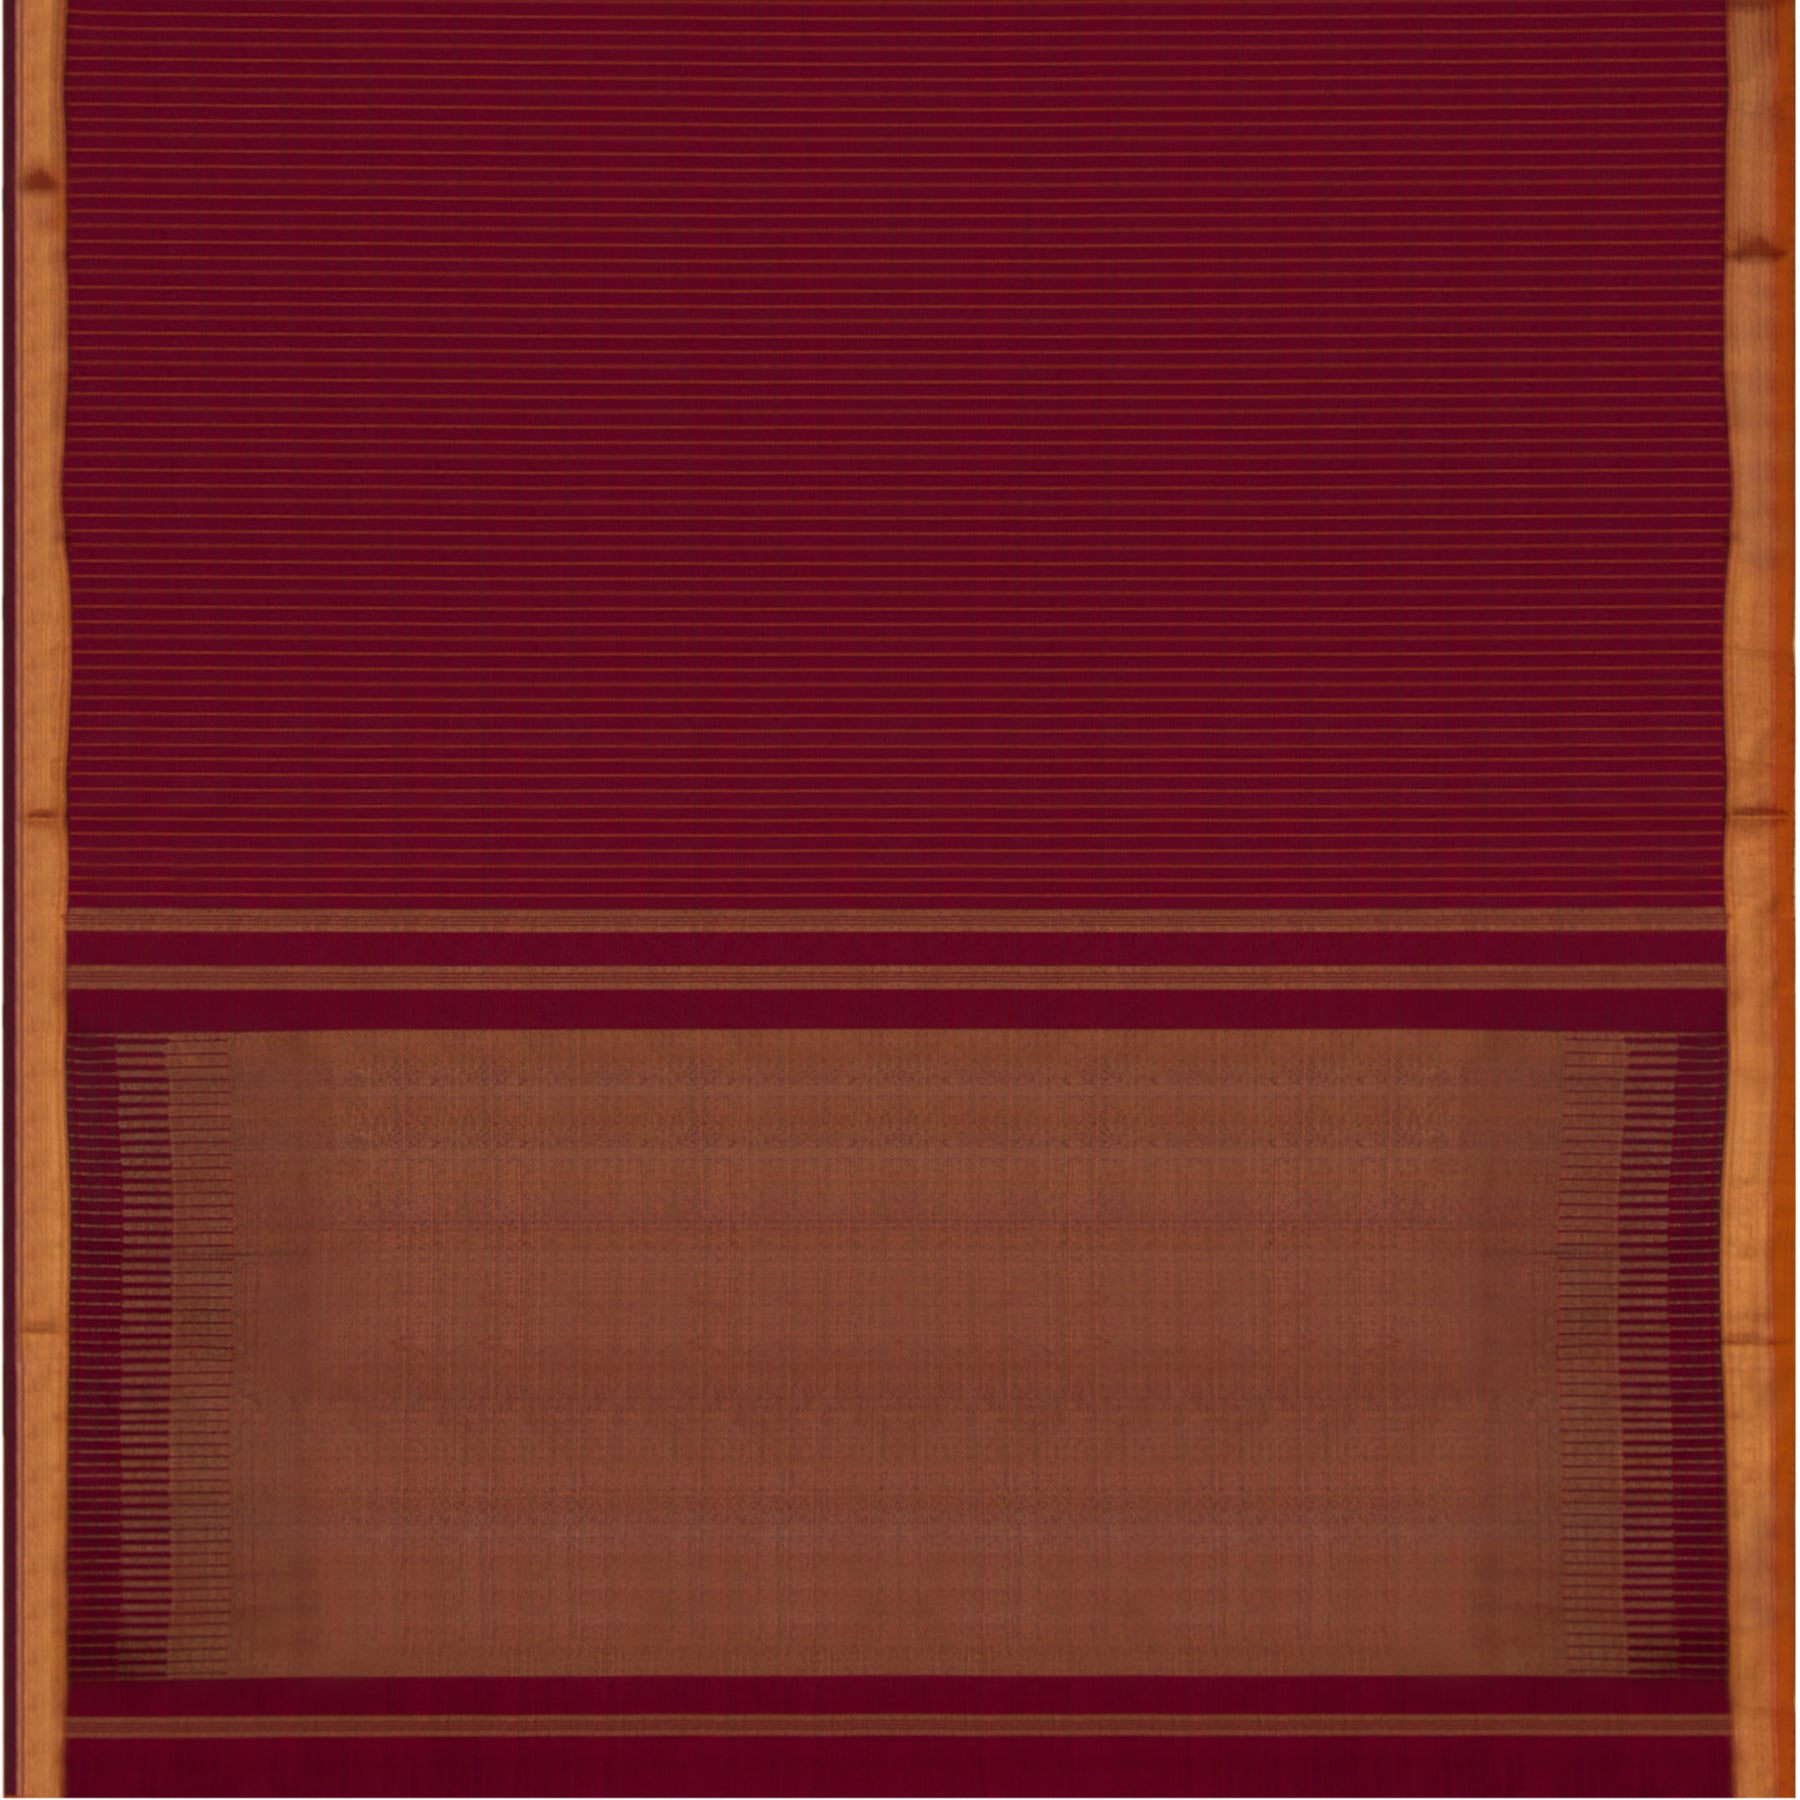 Kanakavalli Kanjivaram Silk Sari 22-611-HS001-04259 - Full View